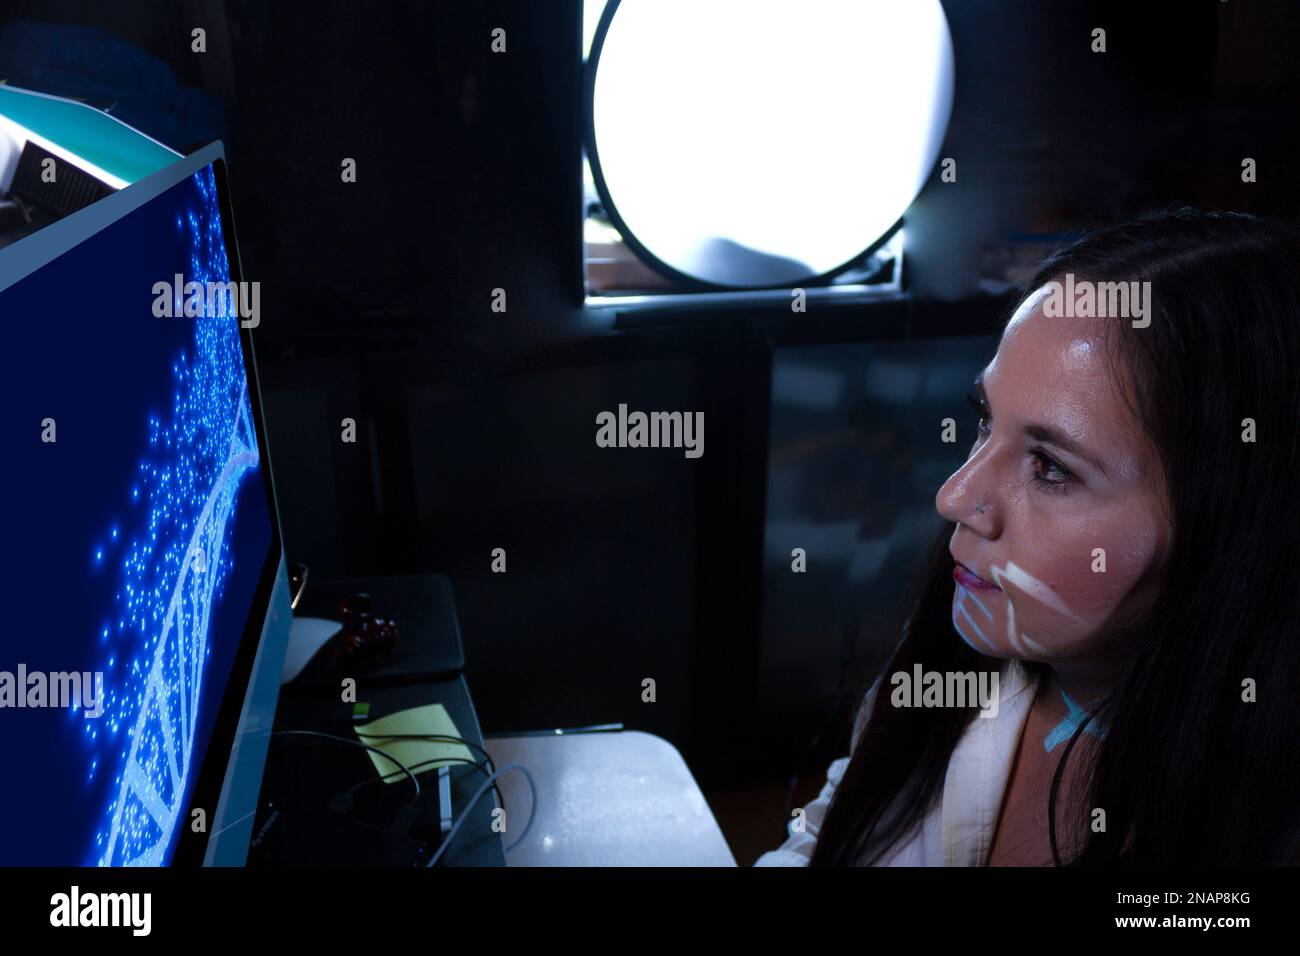 Weibliche Ärztin arbeitet an der menschlichen dna-Analyse mit Computersimulationshilfen, um den menschlichen genetischen Code in Mexiko zu untersuchen Stockfoto